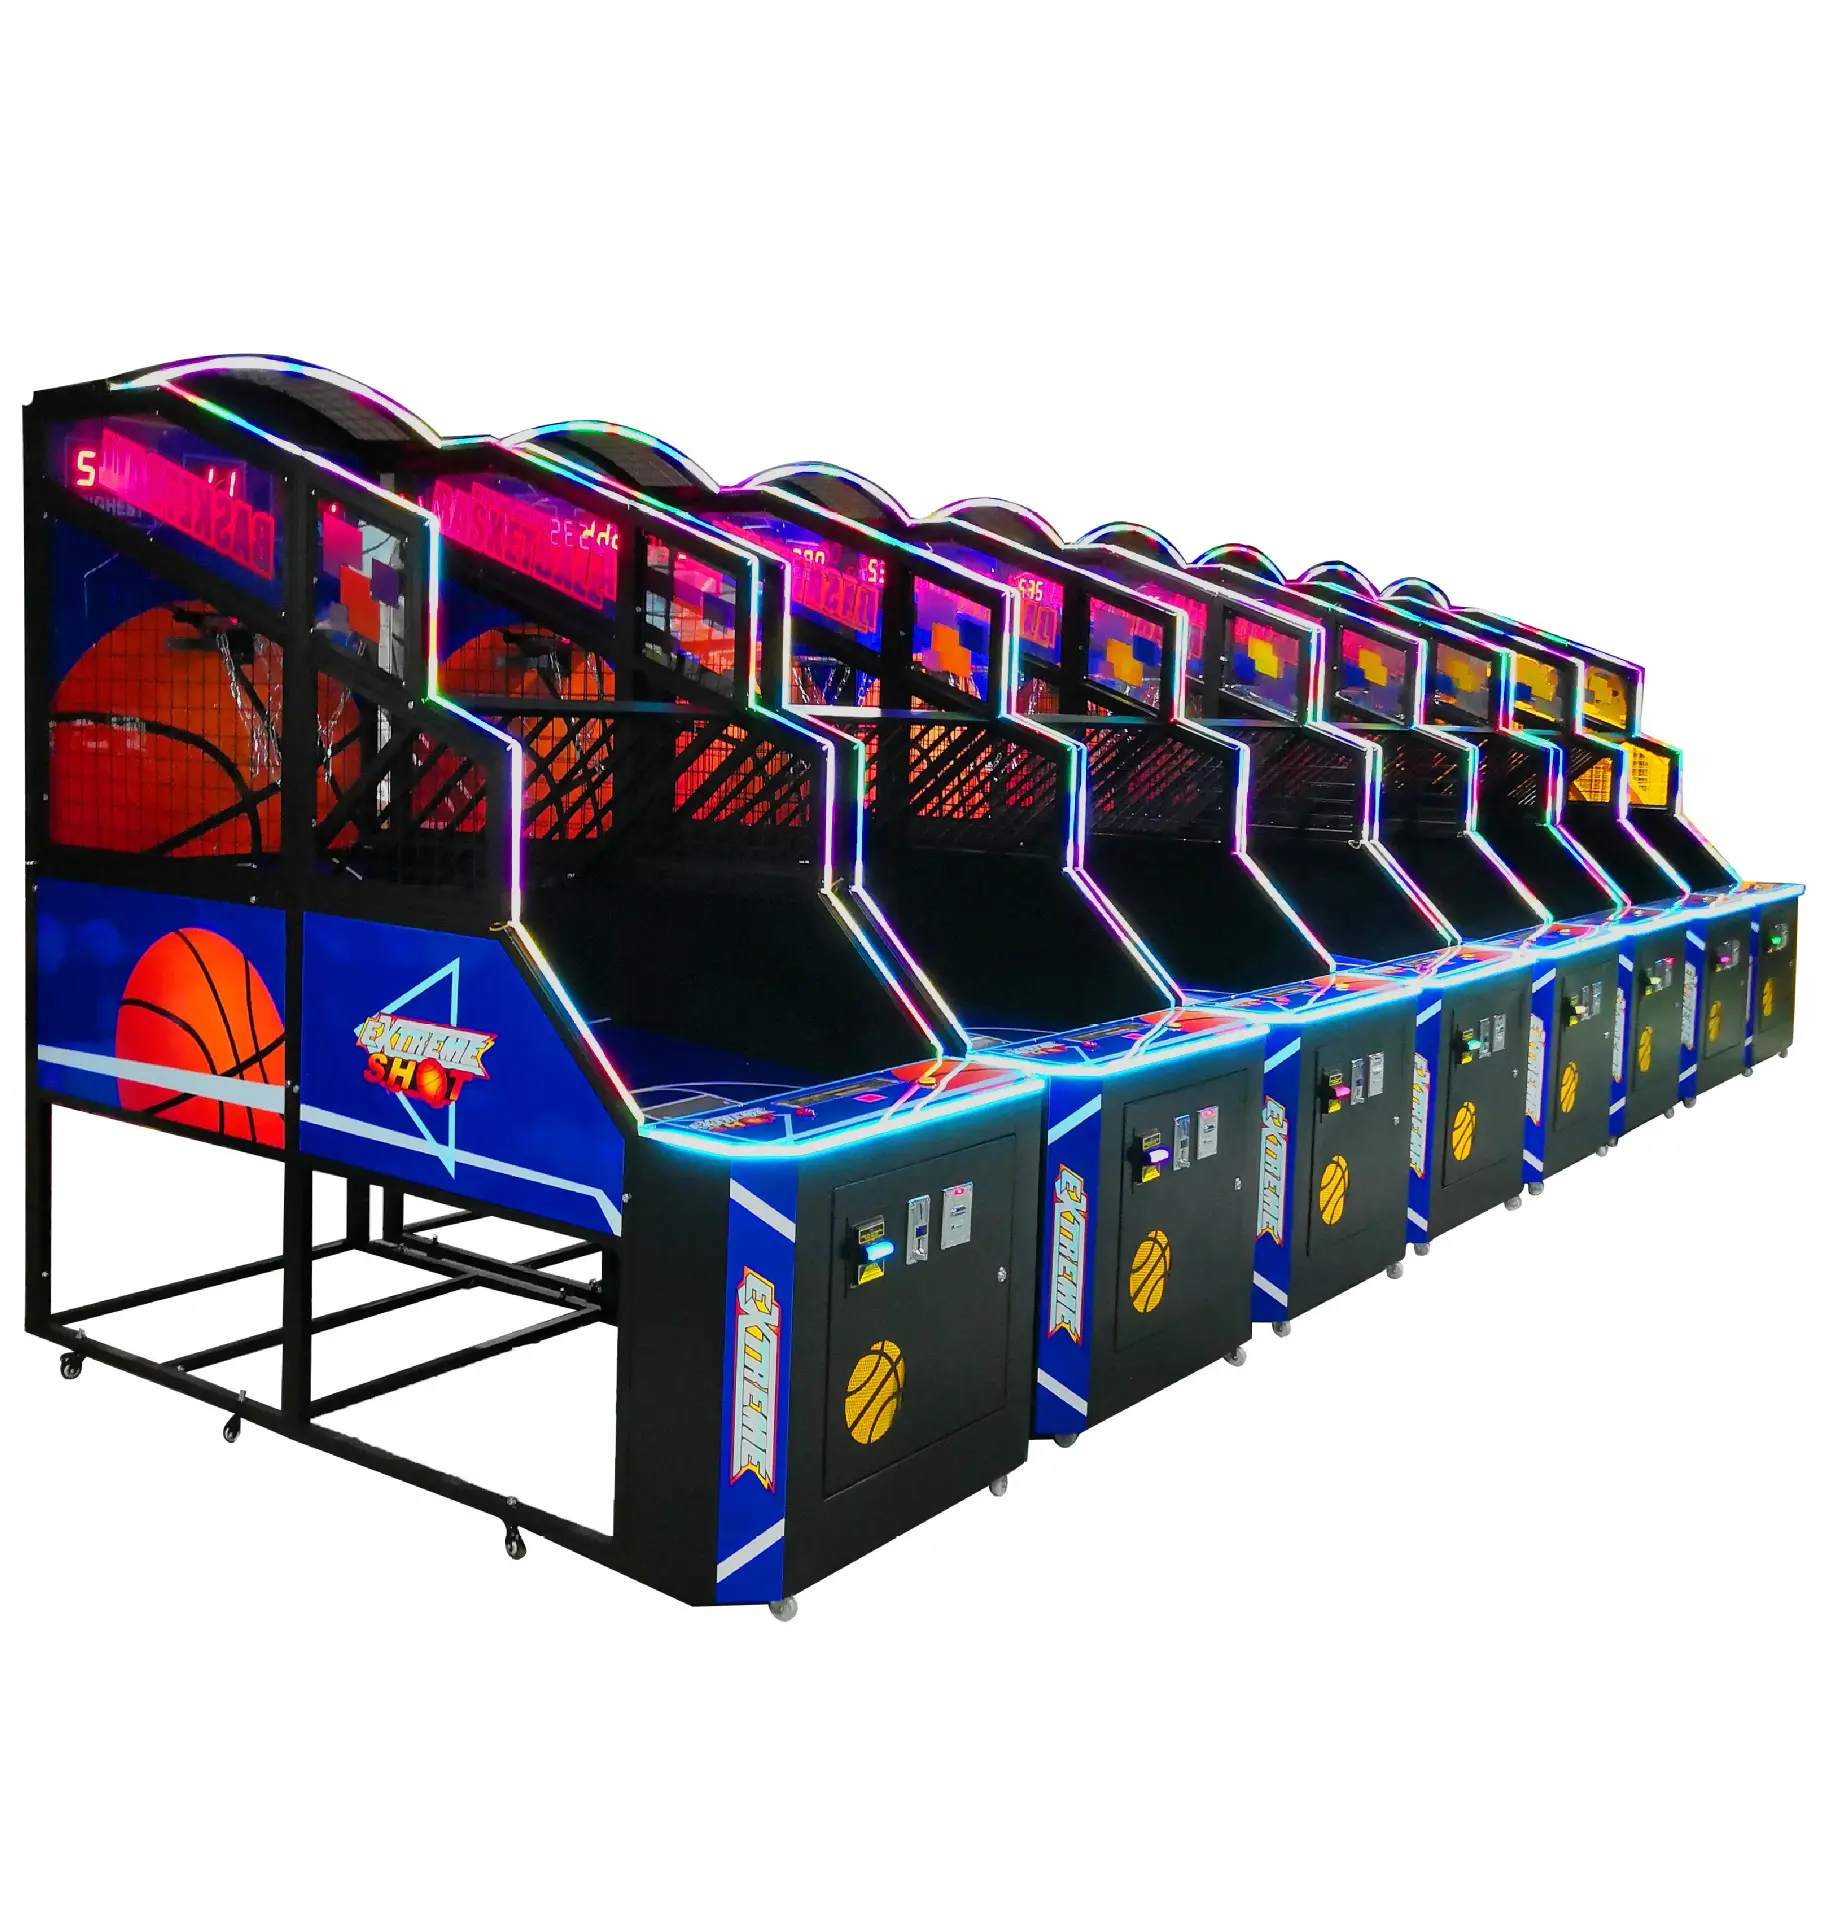 バスケットボールシューティングマシンコイン操作ゲームKIDSユースのための屋内スポーツエンターテインメント